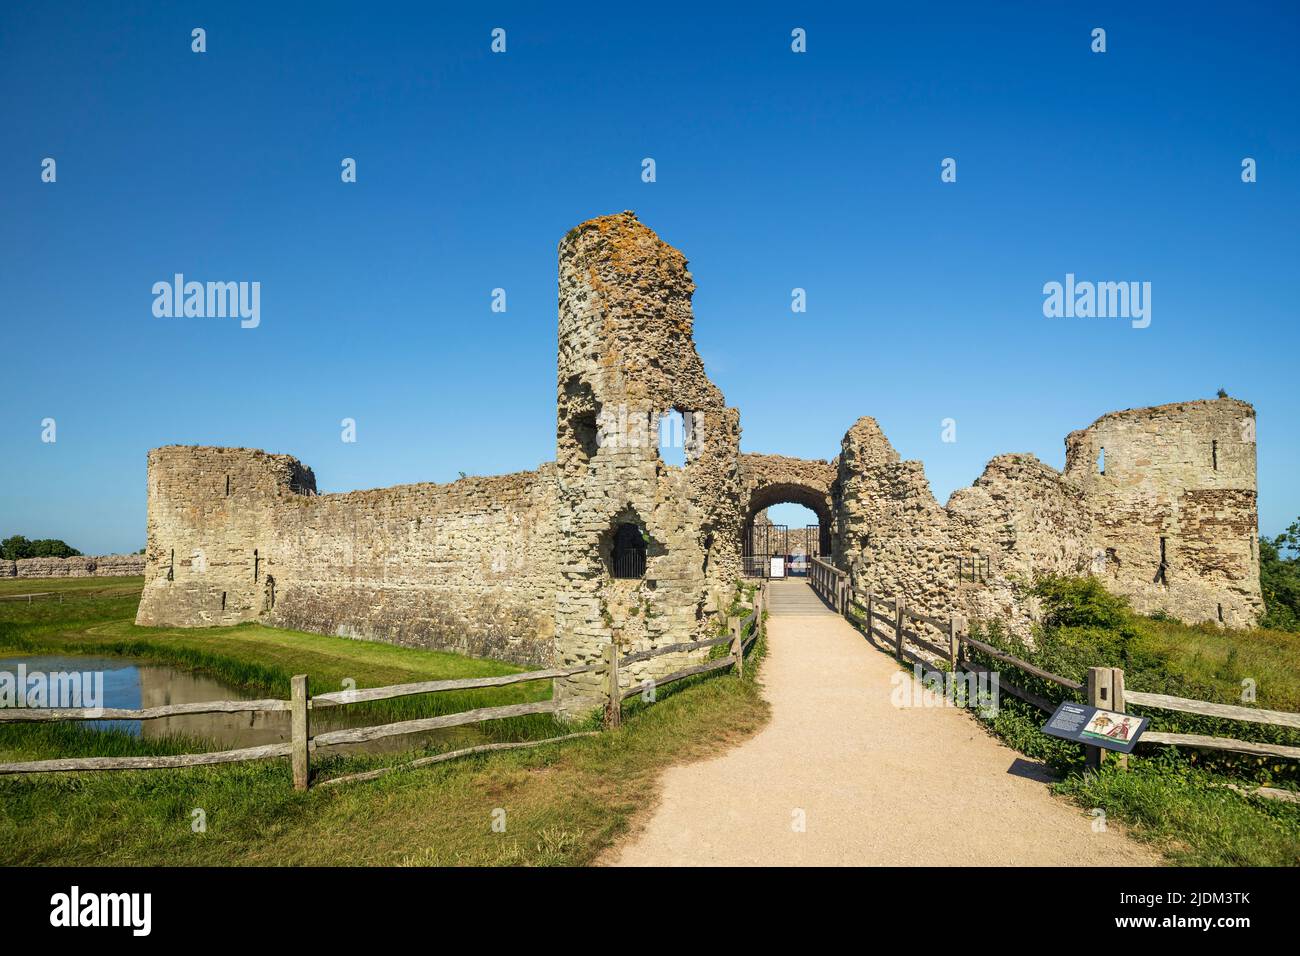 El castillo de Pevensey. Foto de stock